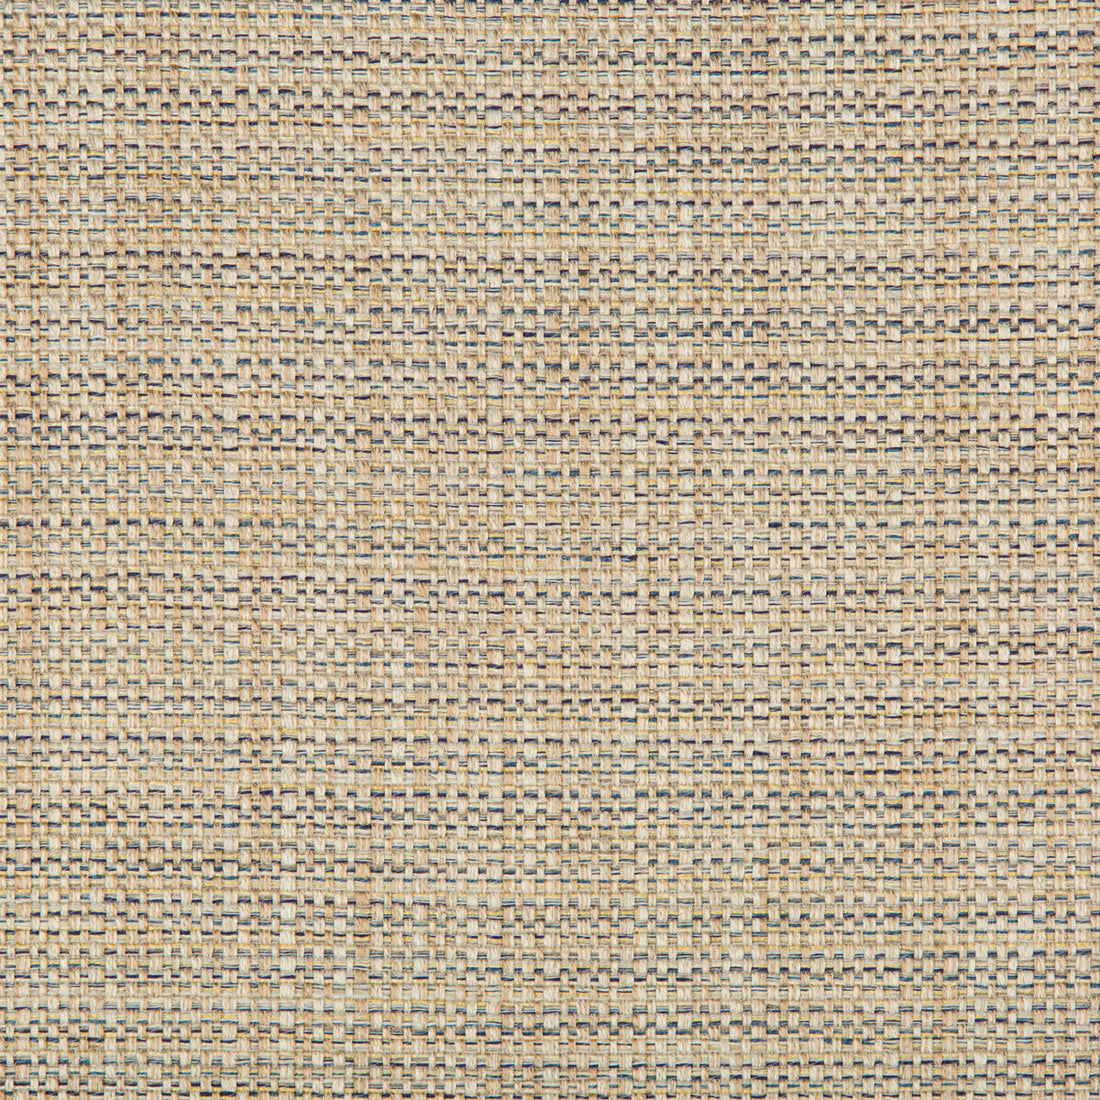 Kravet Basics fabric in 35250-516 color - pattern 35250.516.0 - by Kravet Basics